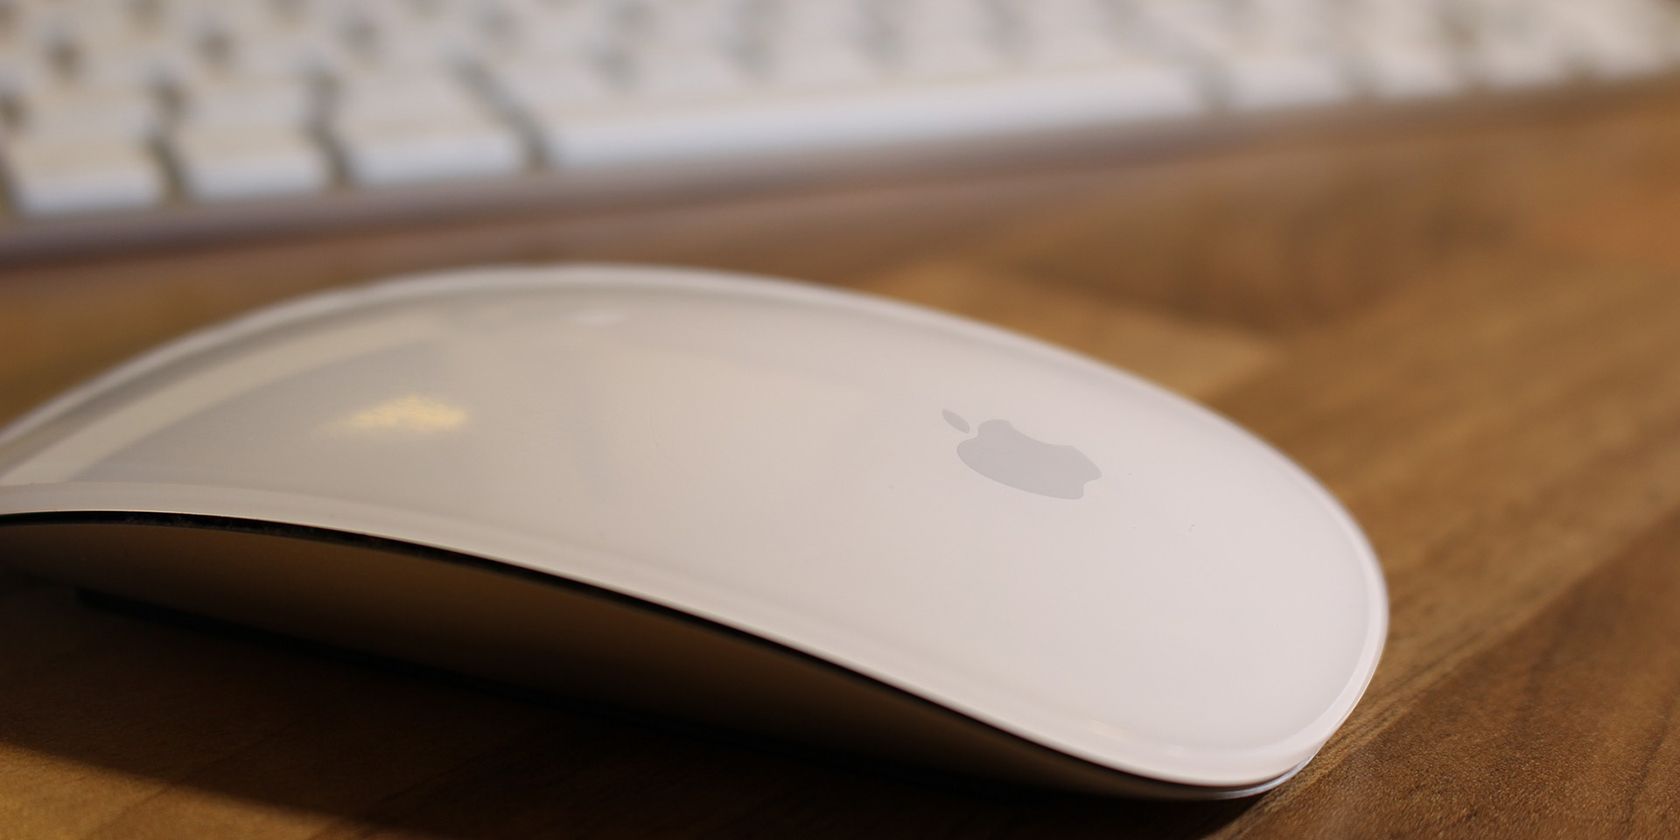 apple mac keyboard jumping around